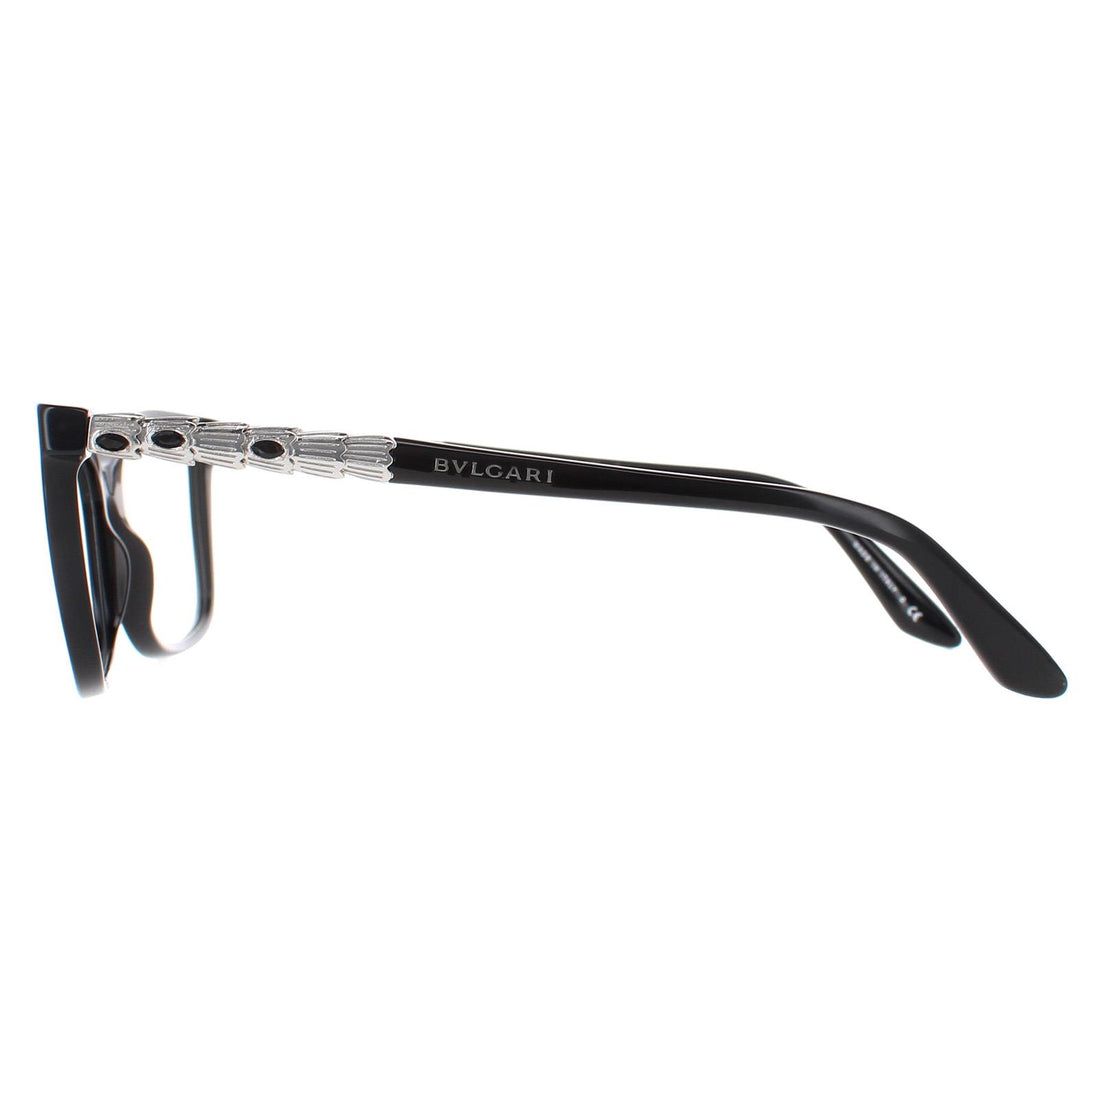 Bvlgari Glasses Frames 4130KB 5190 Black Silver 52mm Womens